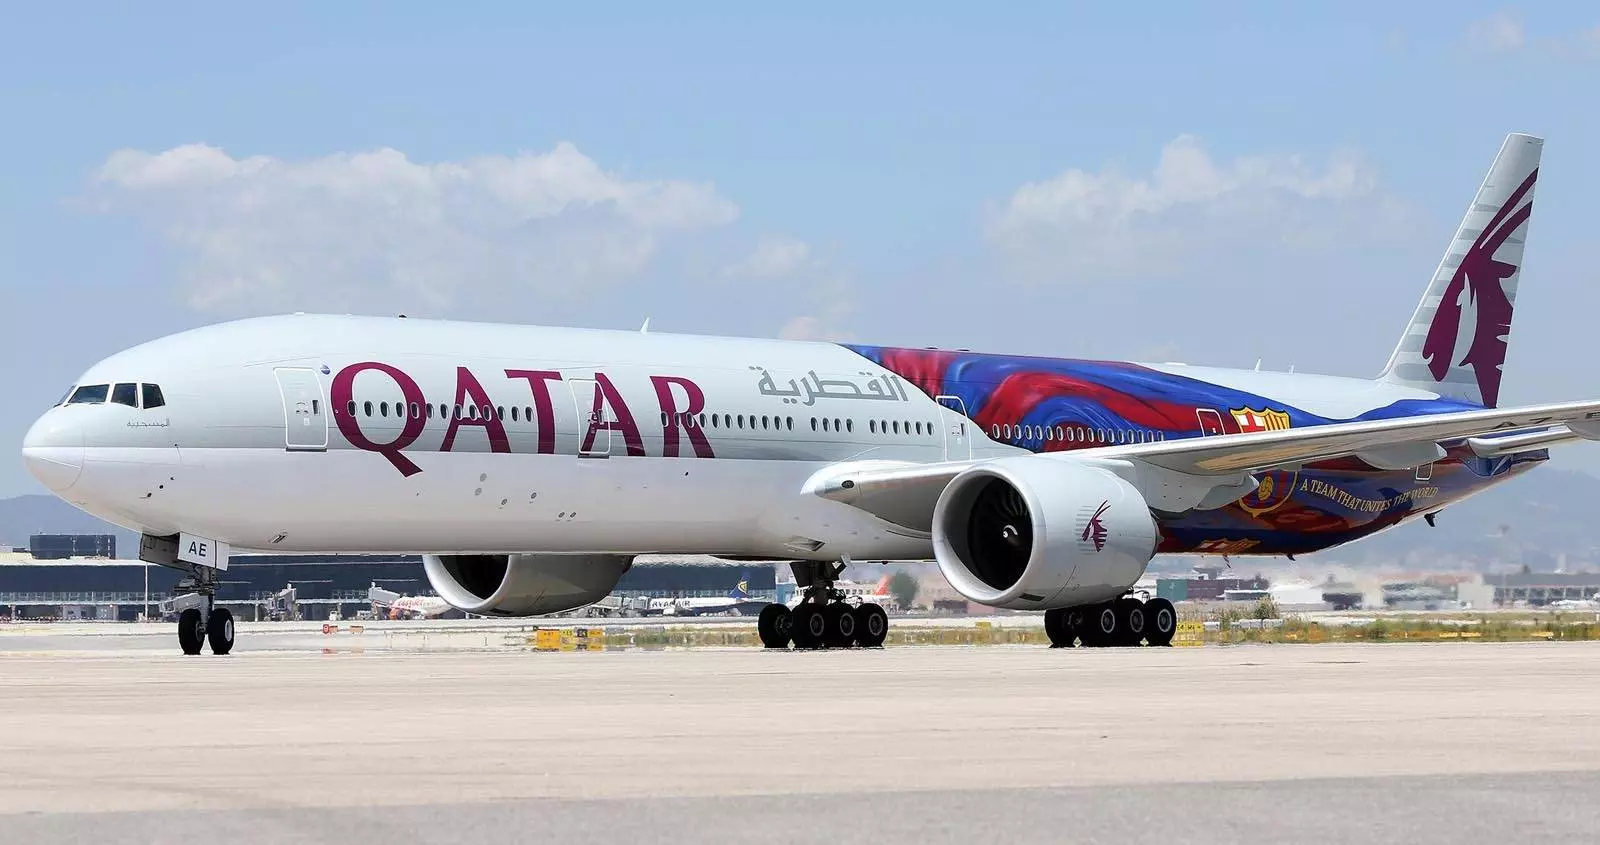 Продажа авиабилетов qatar airways (катар эйрвейз) спец тарифы, спец предложения.